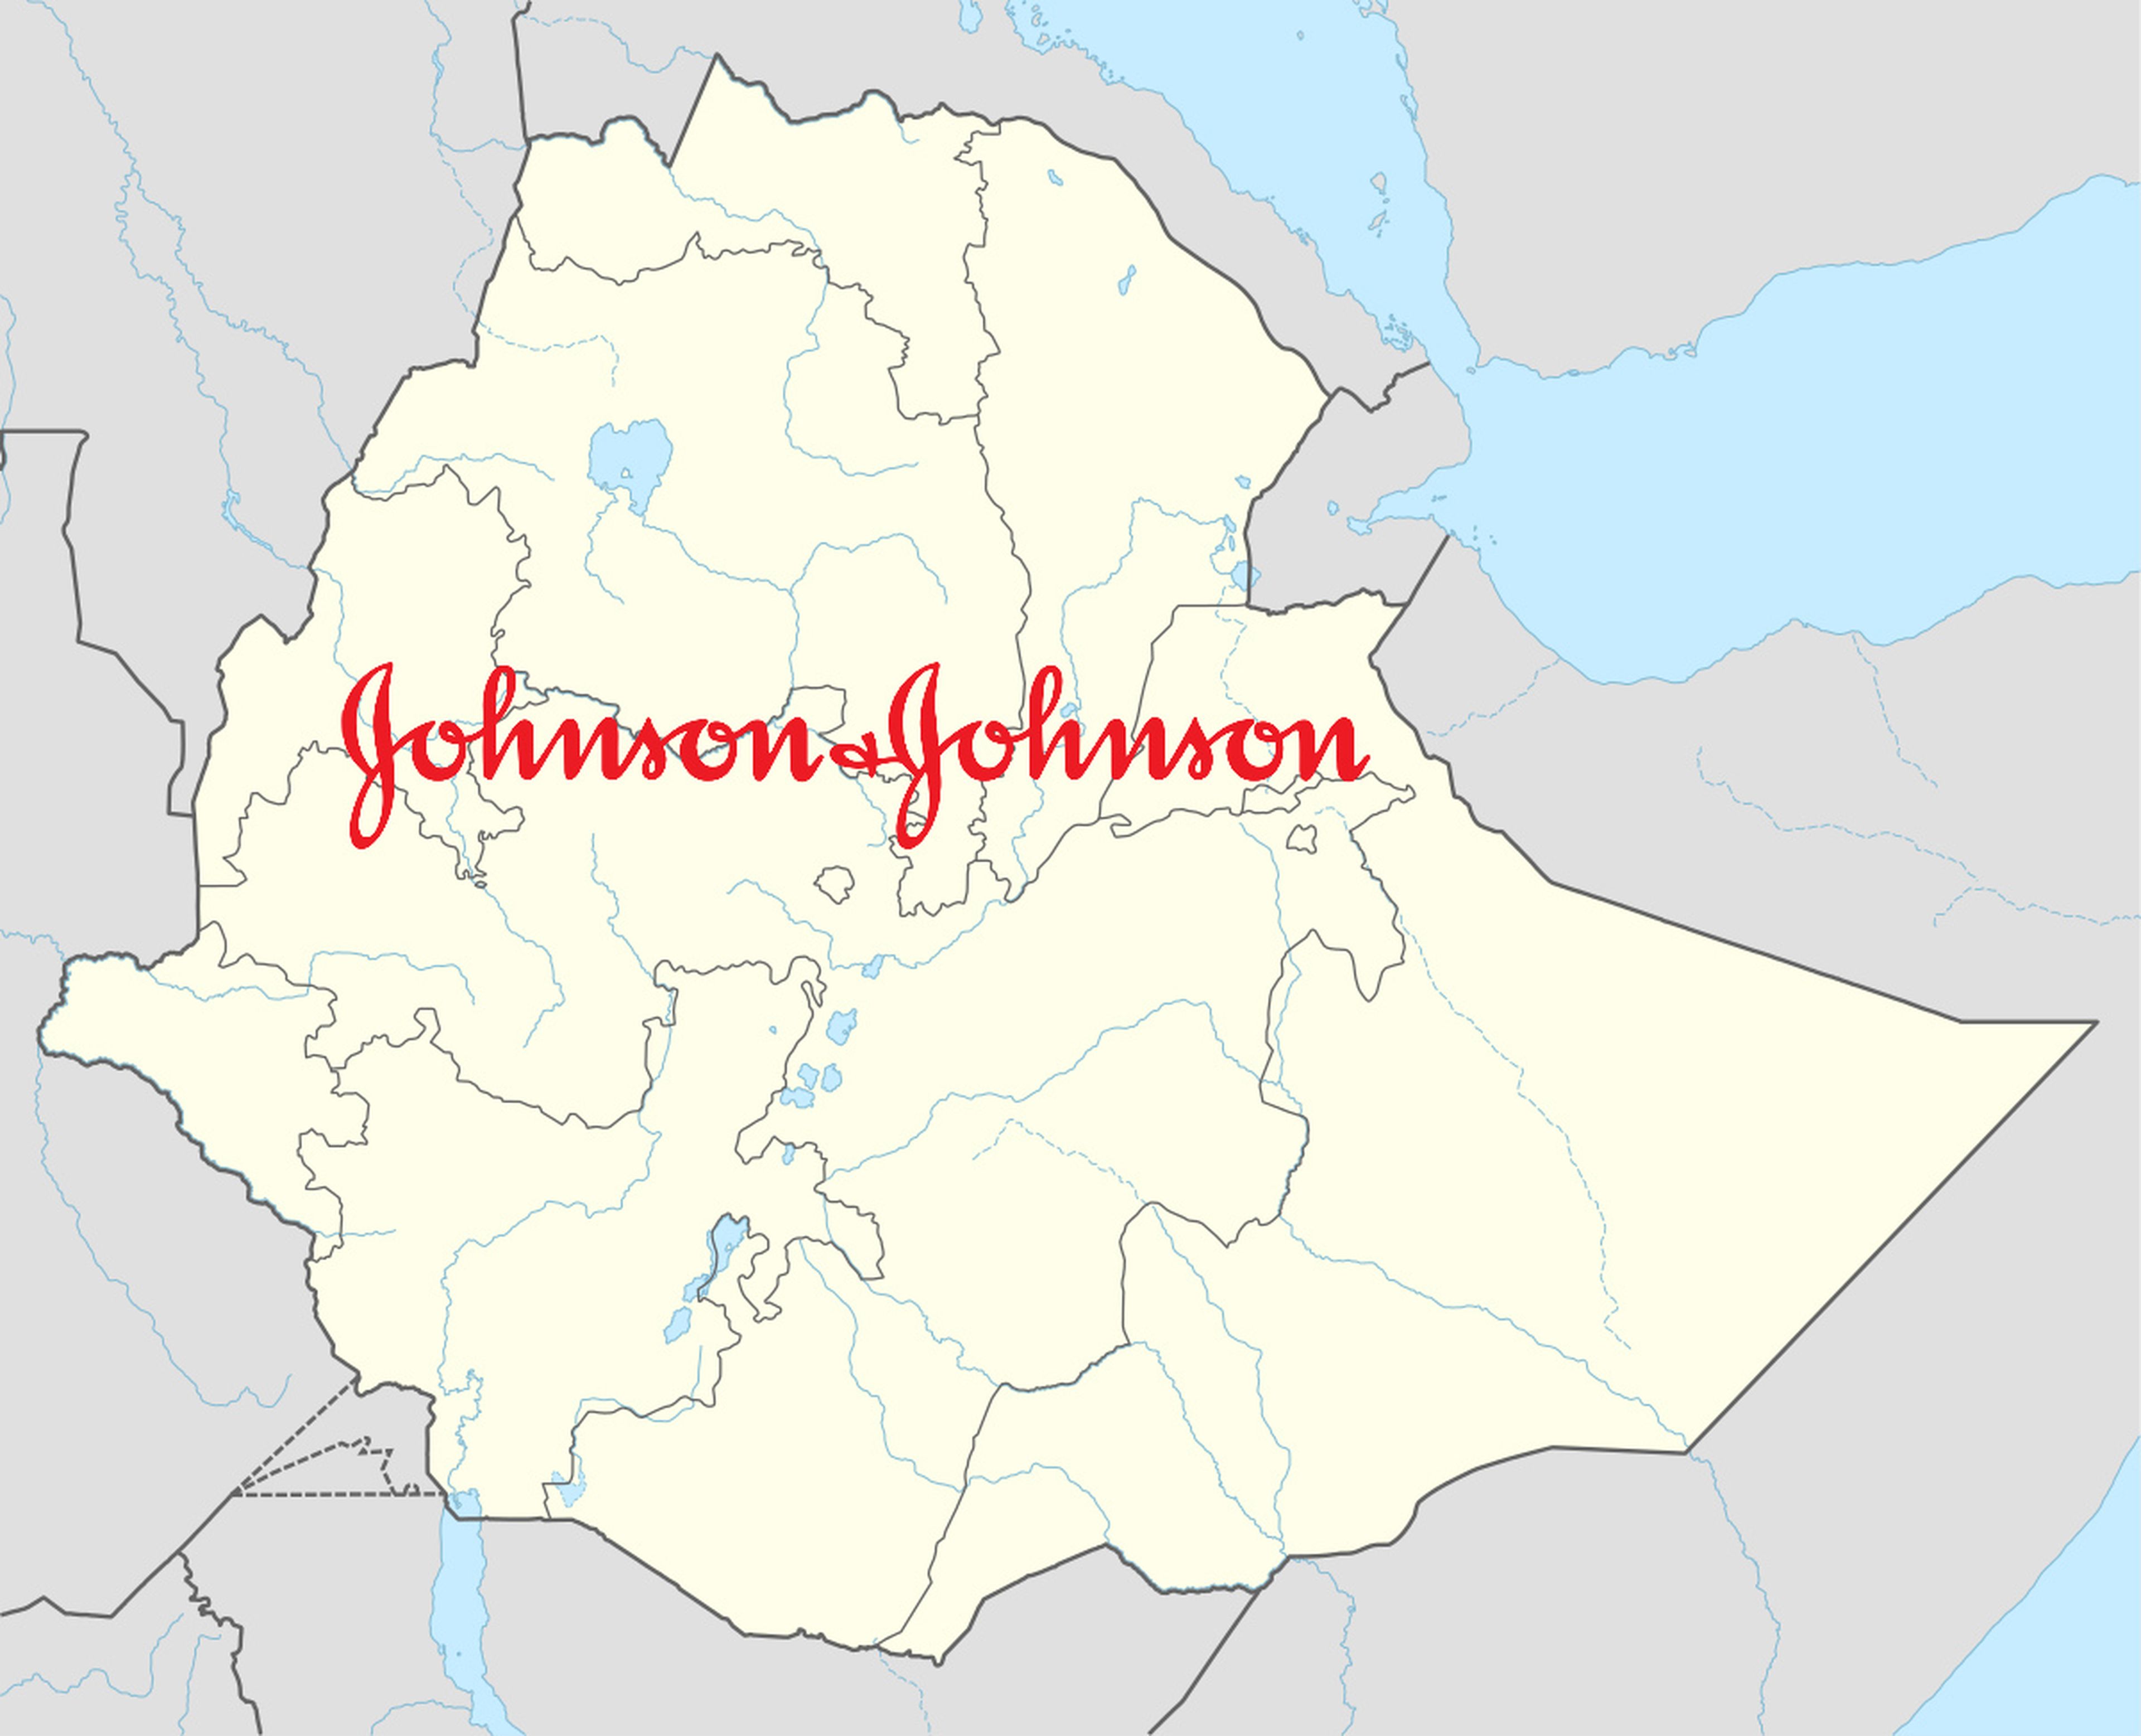 Johnson and Johnson Etiopía